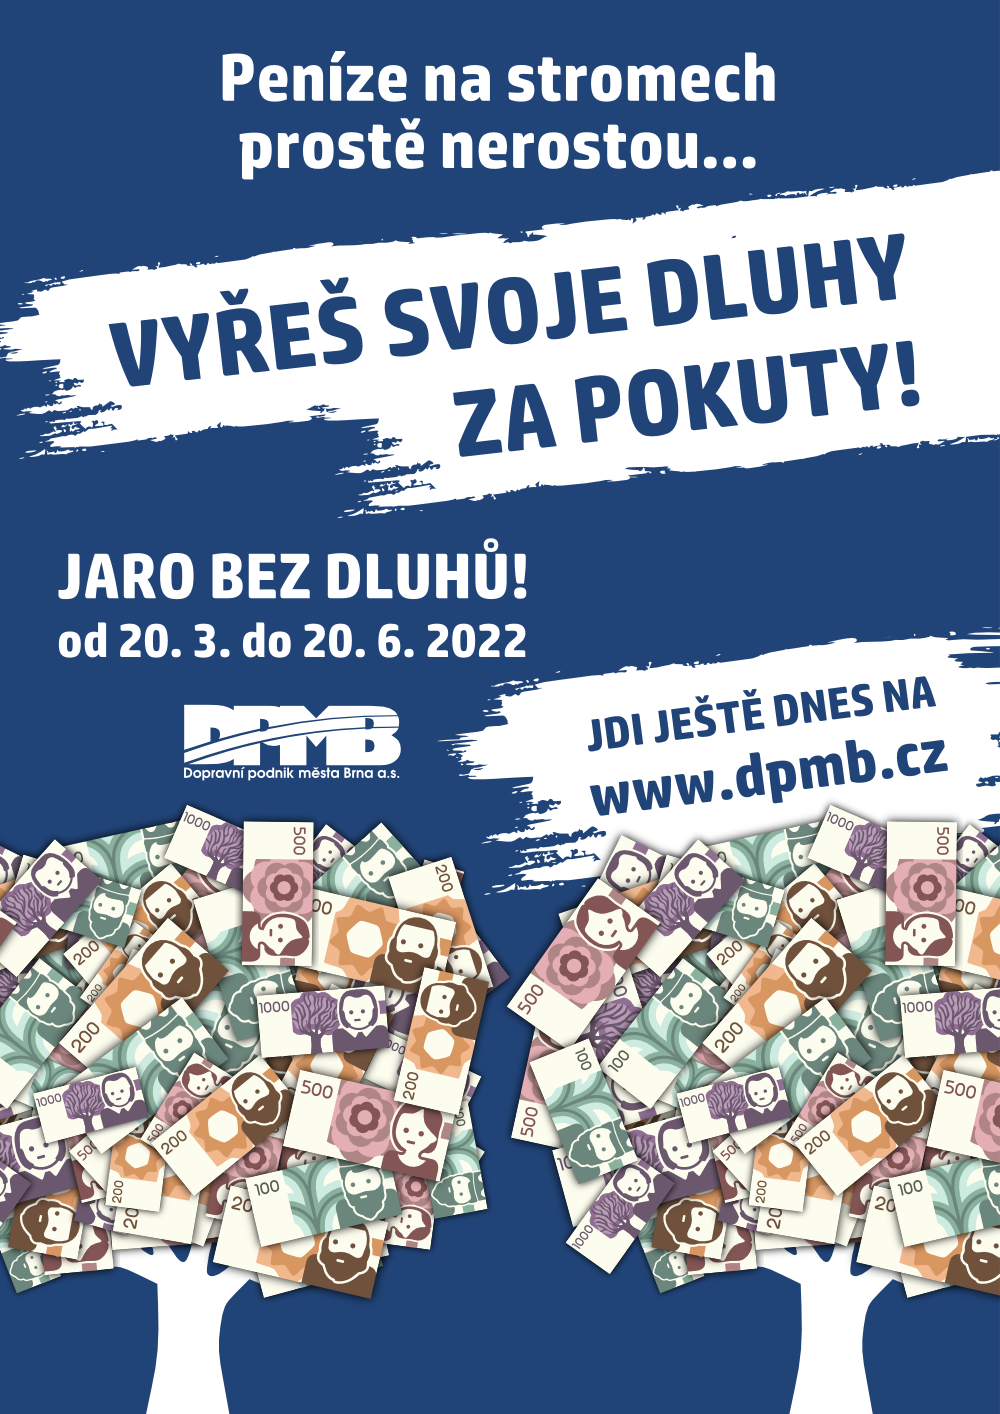 Dopravní podnik města Brna nabízí lidem další možnost, jak se zbavit nezaplacených pokut. Připravil vlastní akci Jaro bez dluhů s DPMB